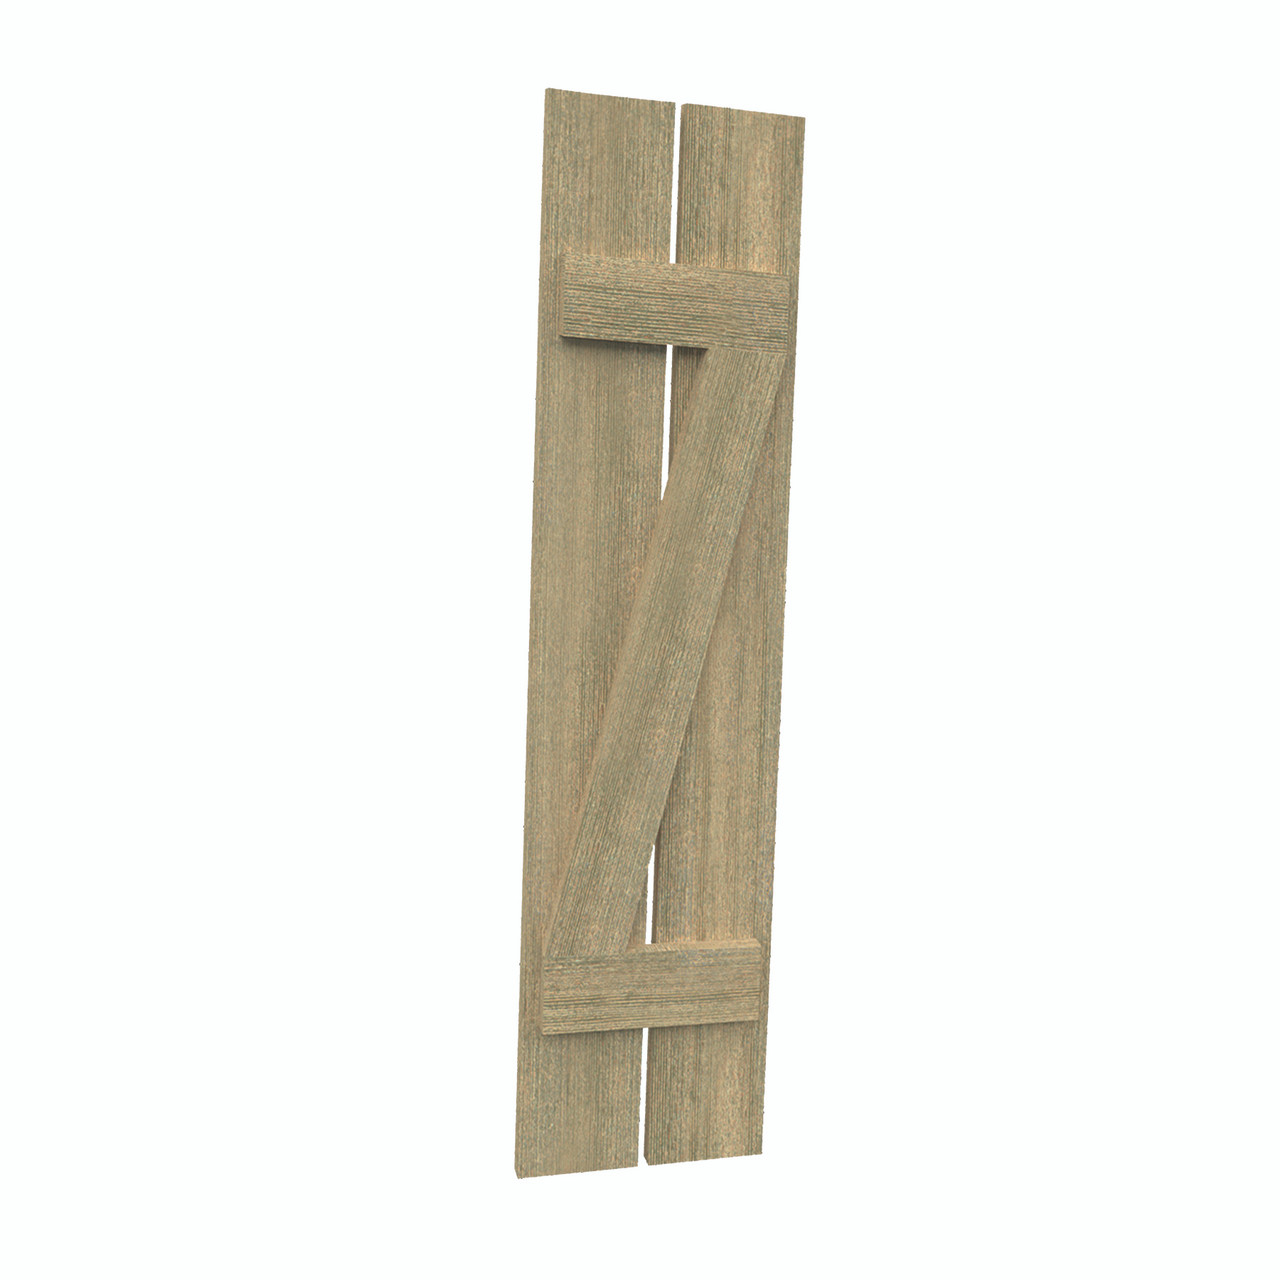 12 inch by 88 inch Plank Shutter with 2-Plank, Z-Batten